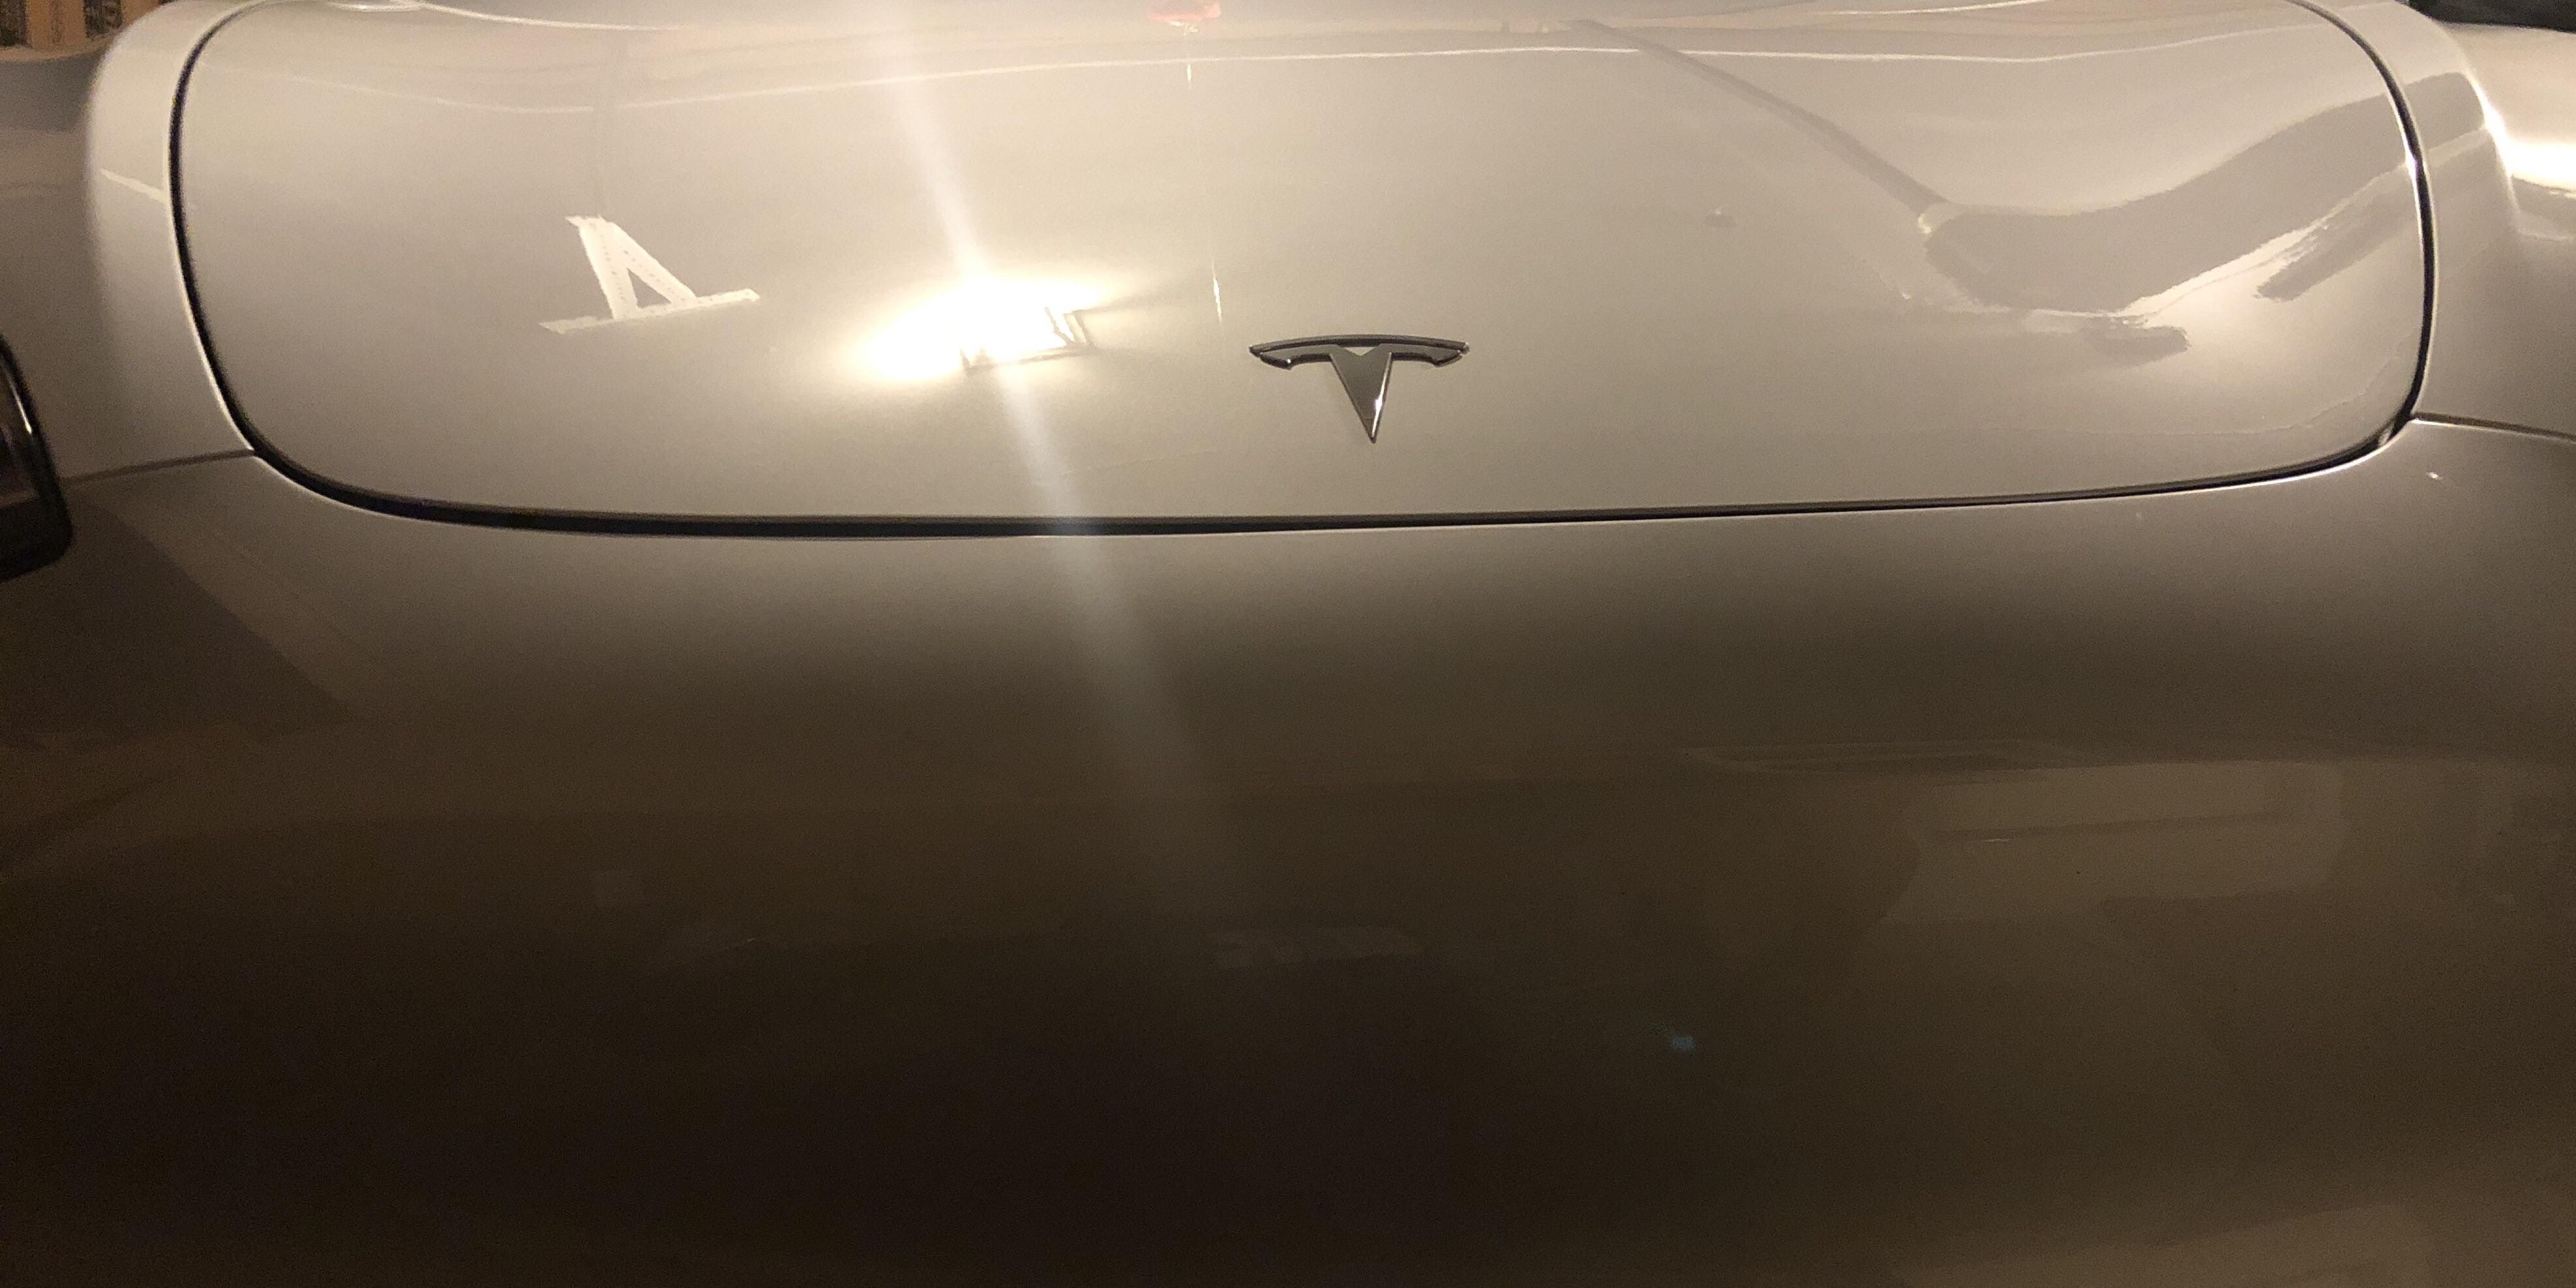 Tesla Panel Gaps